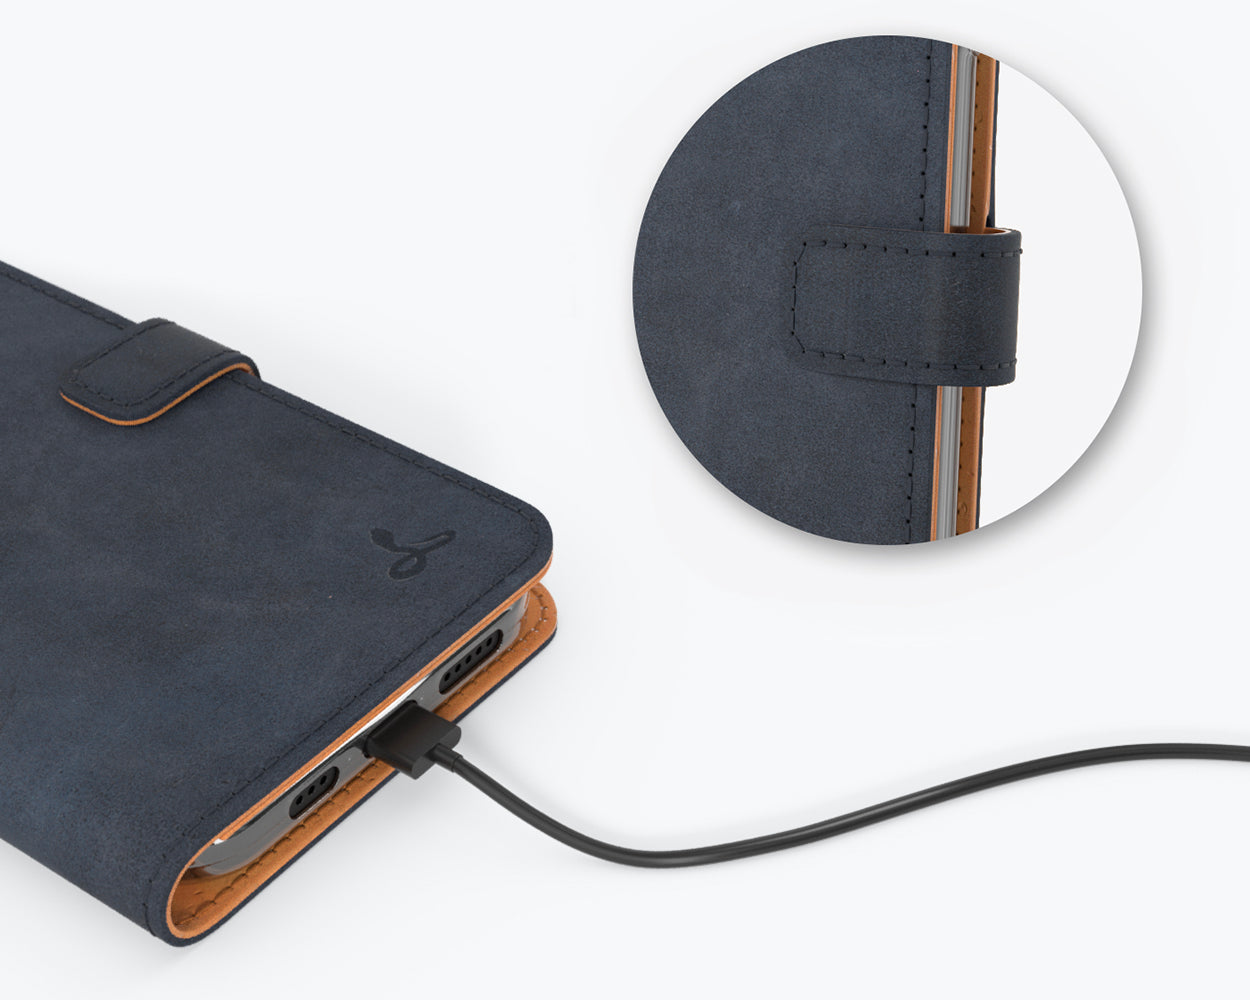 Étui portefeuille en cuir vintage - Apple iPhone 12 Mini